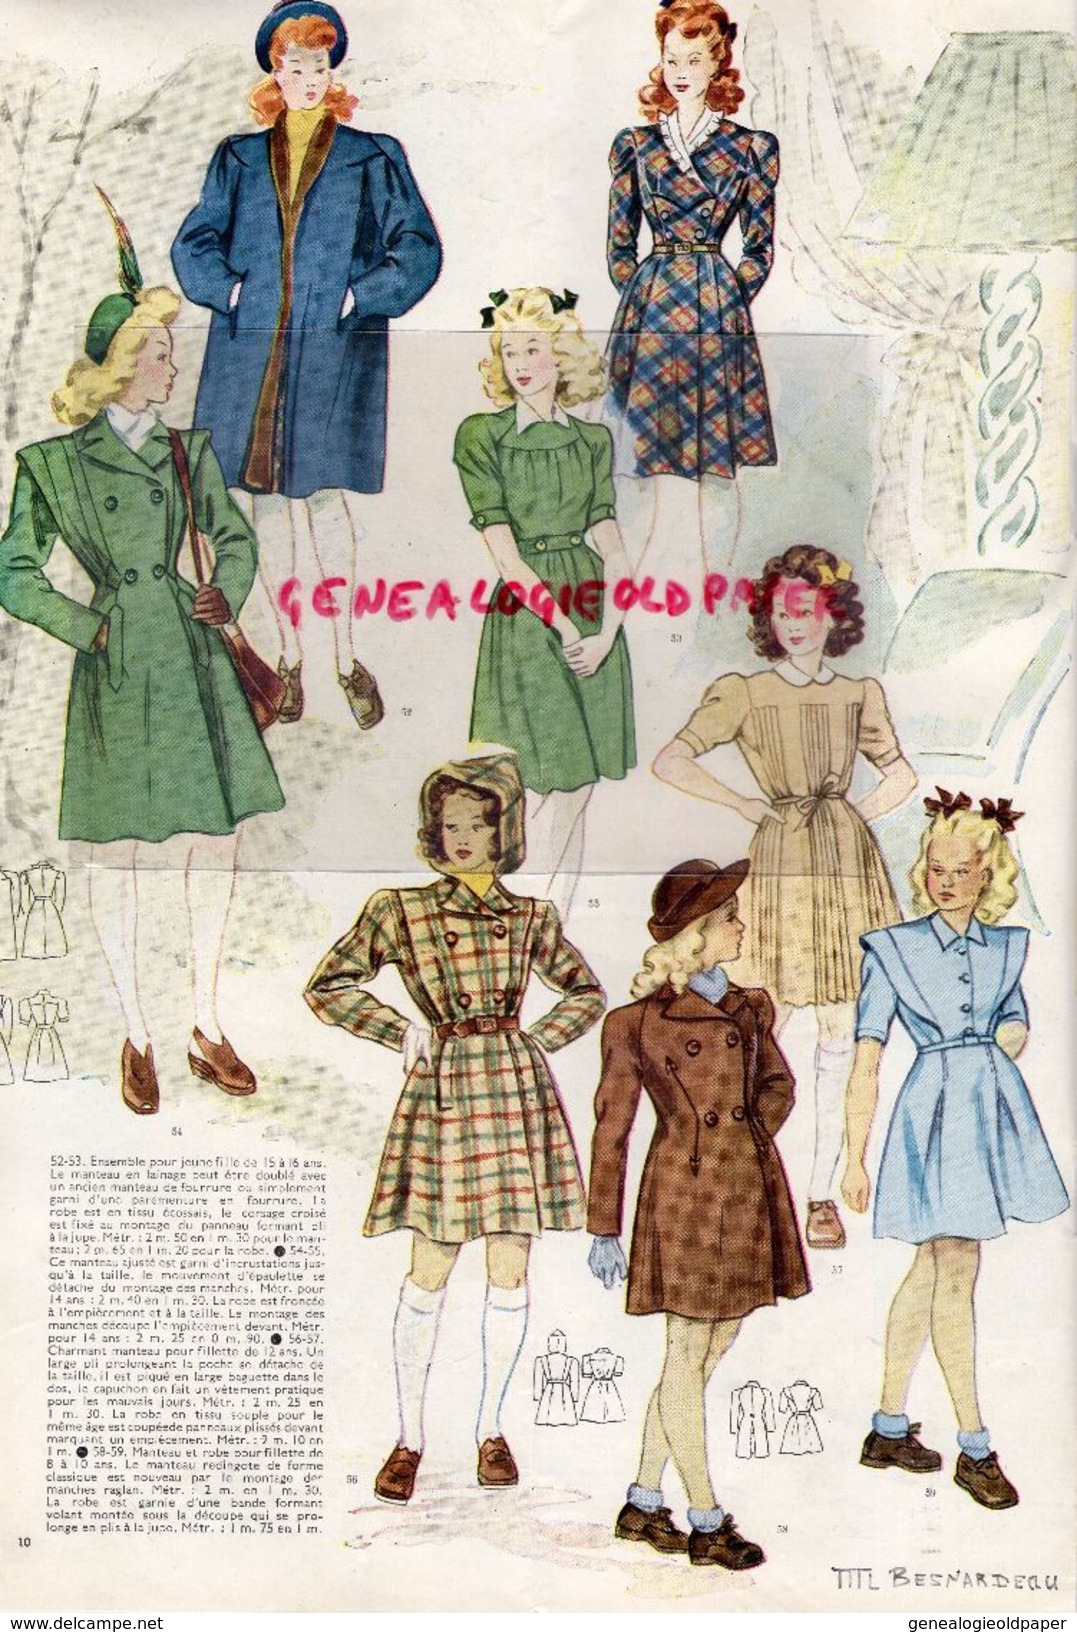 REVUE MODES & TRAVAUX-NOV. DECEMBRE 1945- N° 547-GUERRE MODE-JACQUES FATH-LUCIEN LELONG-LANVIN-MADELEINE DE RAUCH - - Fashion